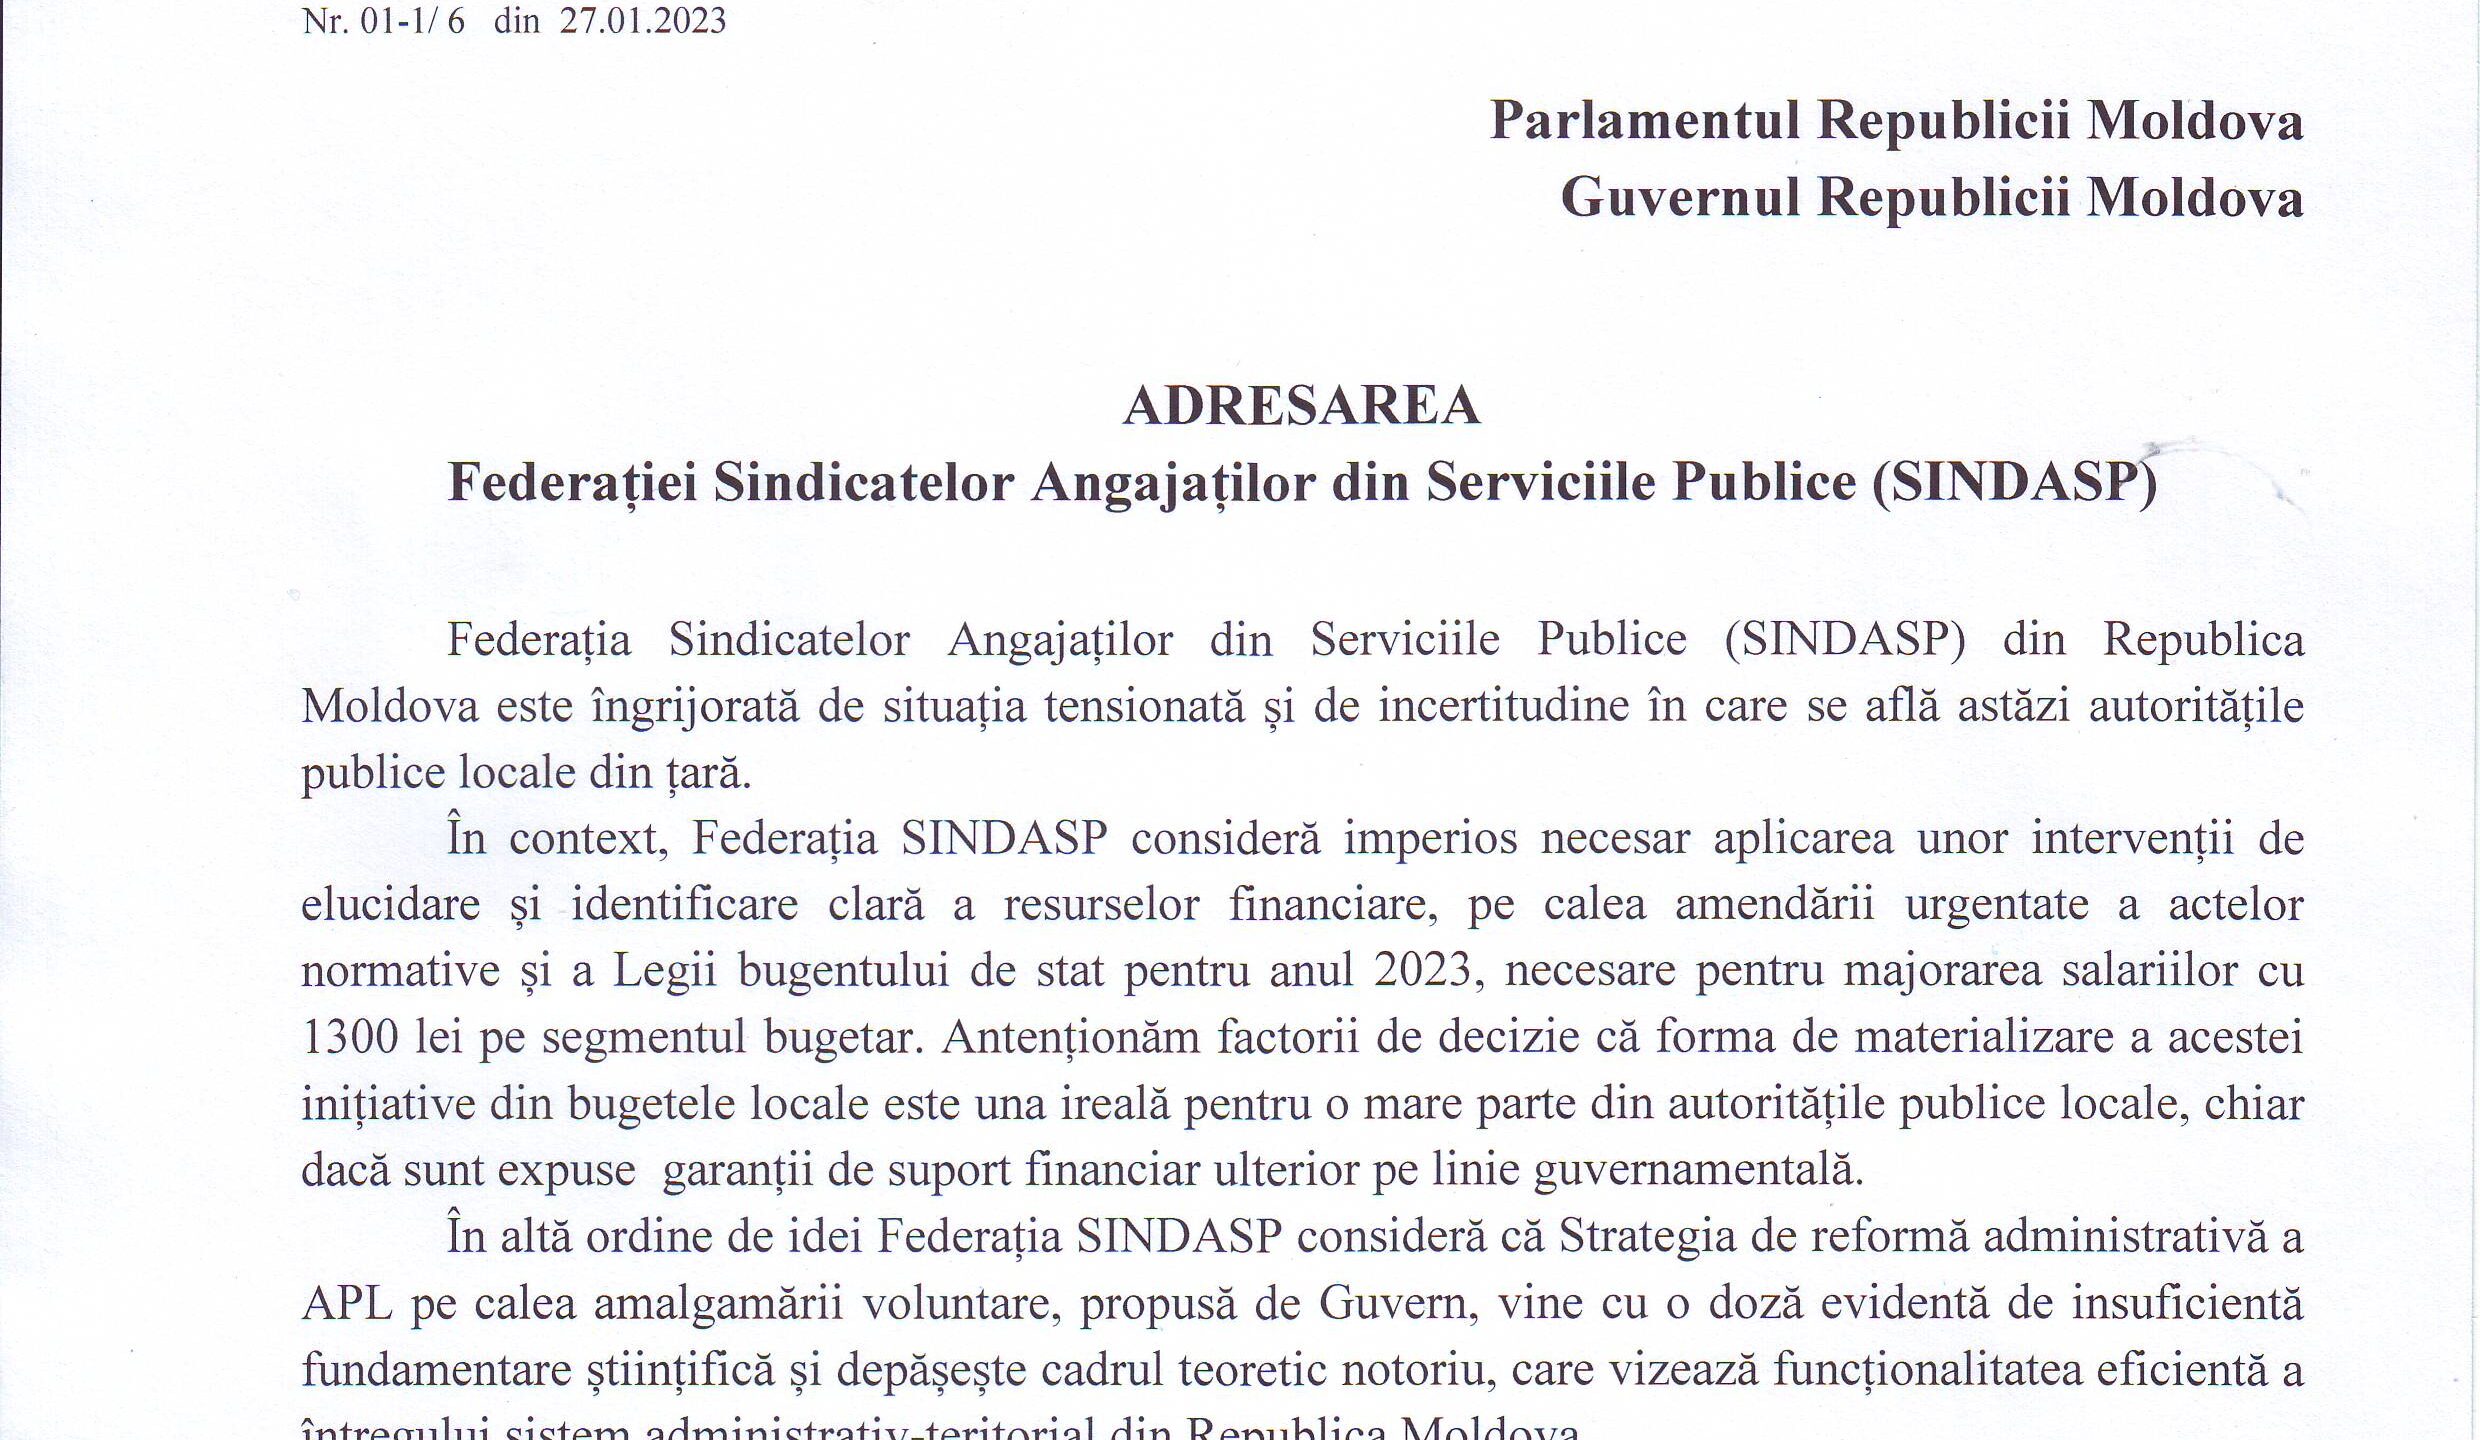 Adresarea Federației SINDASP cu privire la situația tensionată și de incertitudine în care se află astăzi autoritățile publice locale din țară, către Parlamentul și Guvernul Republicii Moldova